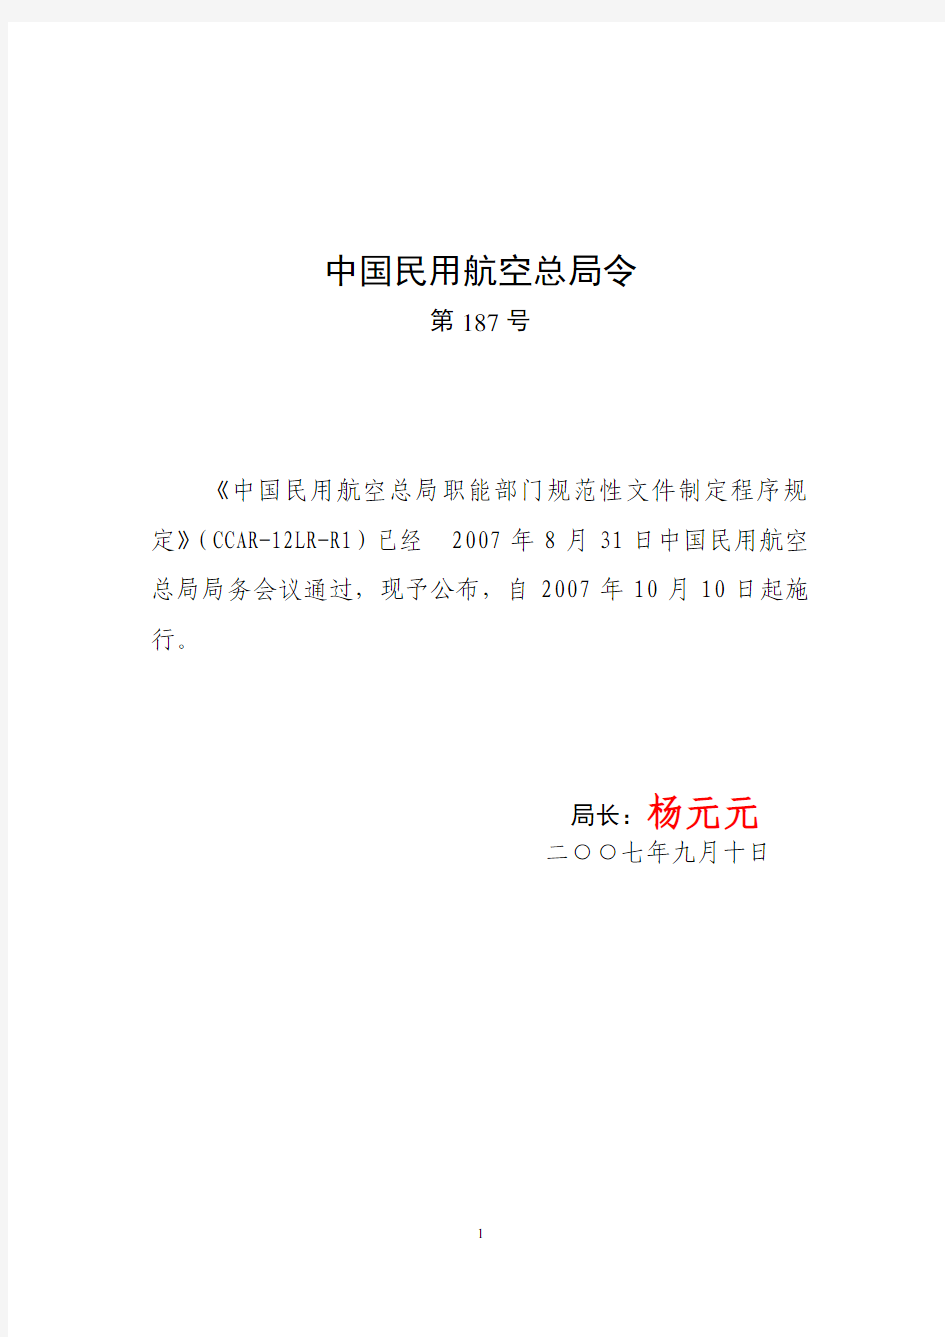 CCAR-12LR-R1中国民用航空总局职能部门规范性文件制定程序规定